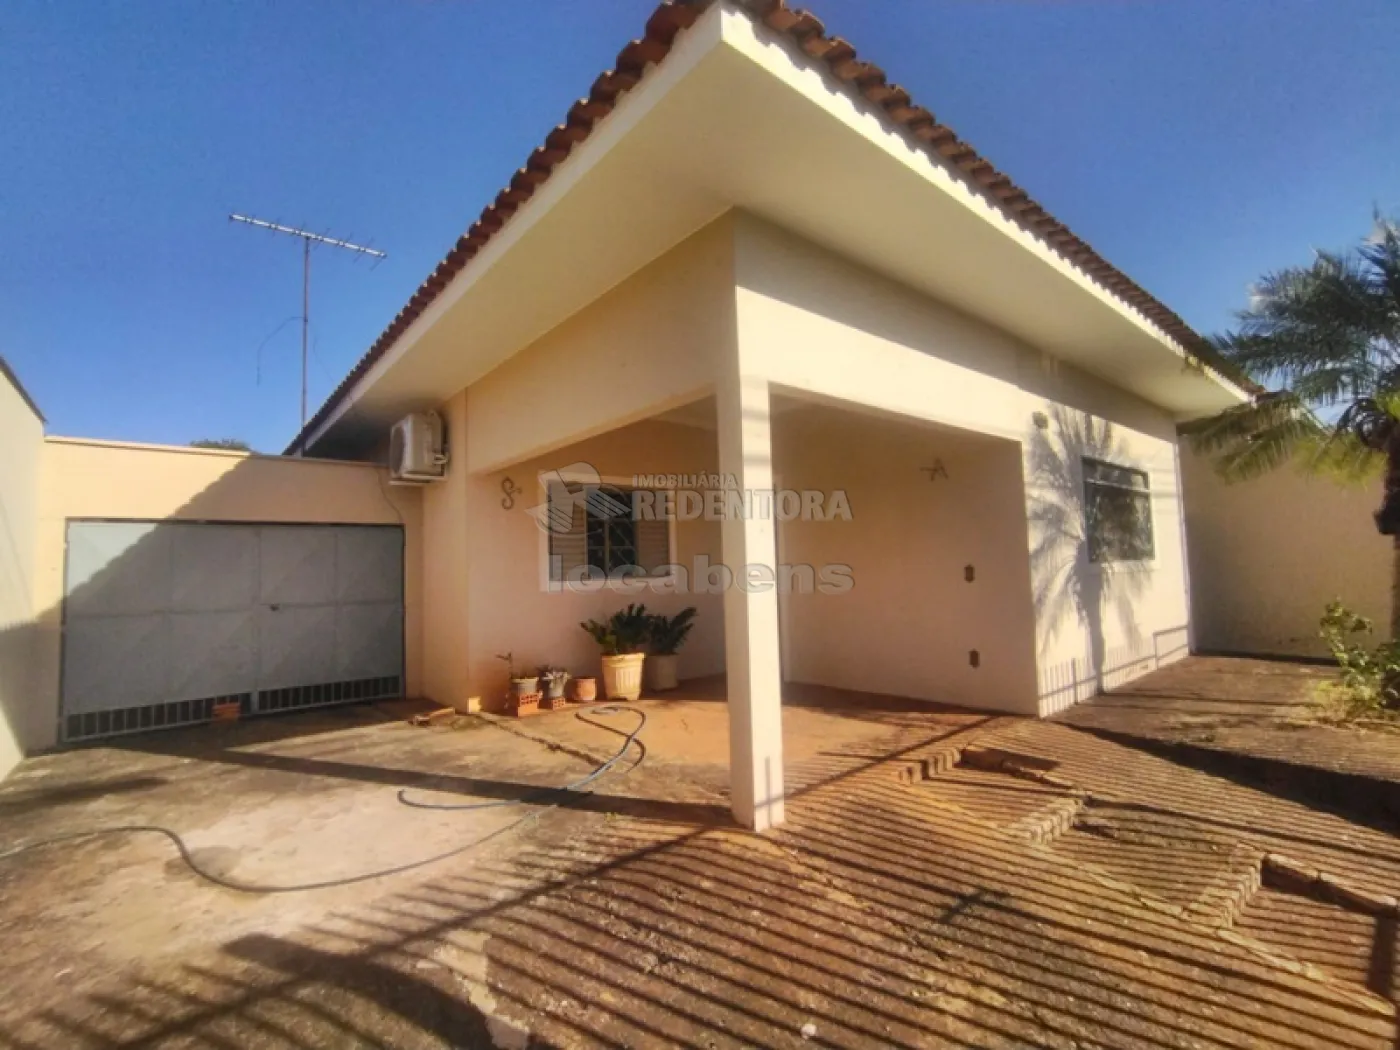 Alugar Casa / Padrão em São José do Rio Preto R$ 1.850,00 - Foto 3